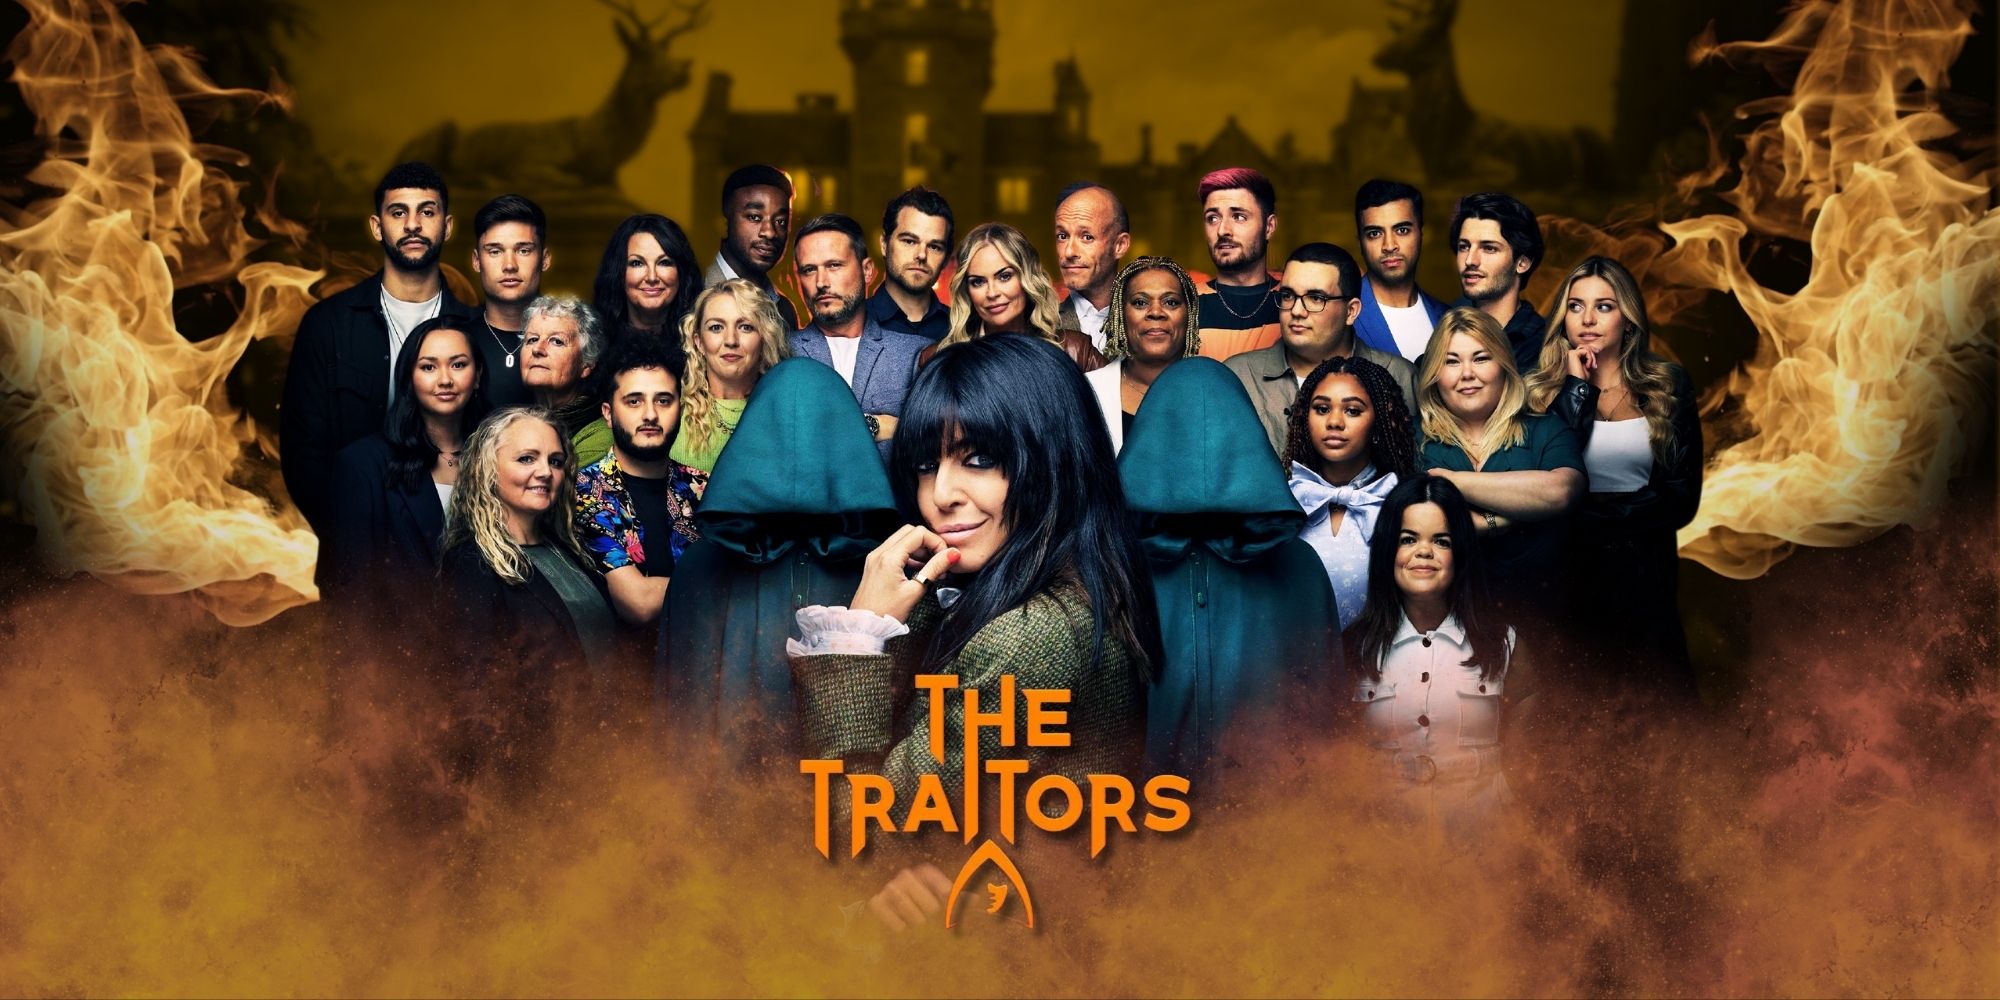 Temporada 2 de The Traitors UK: ¿Cuándo es el final y cuántos episodios quedan?